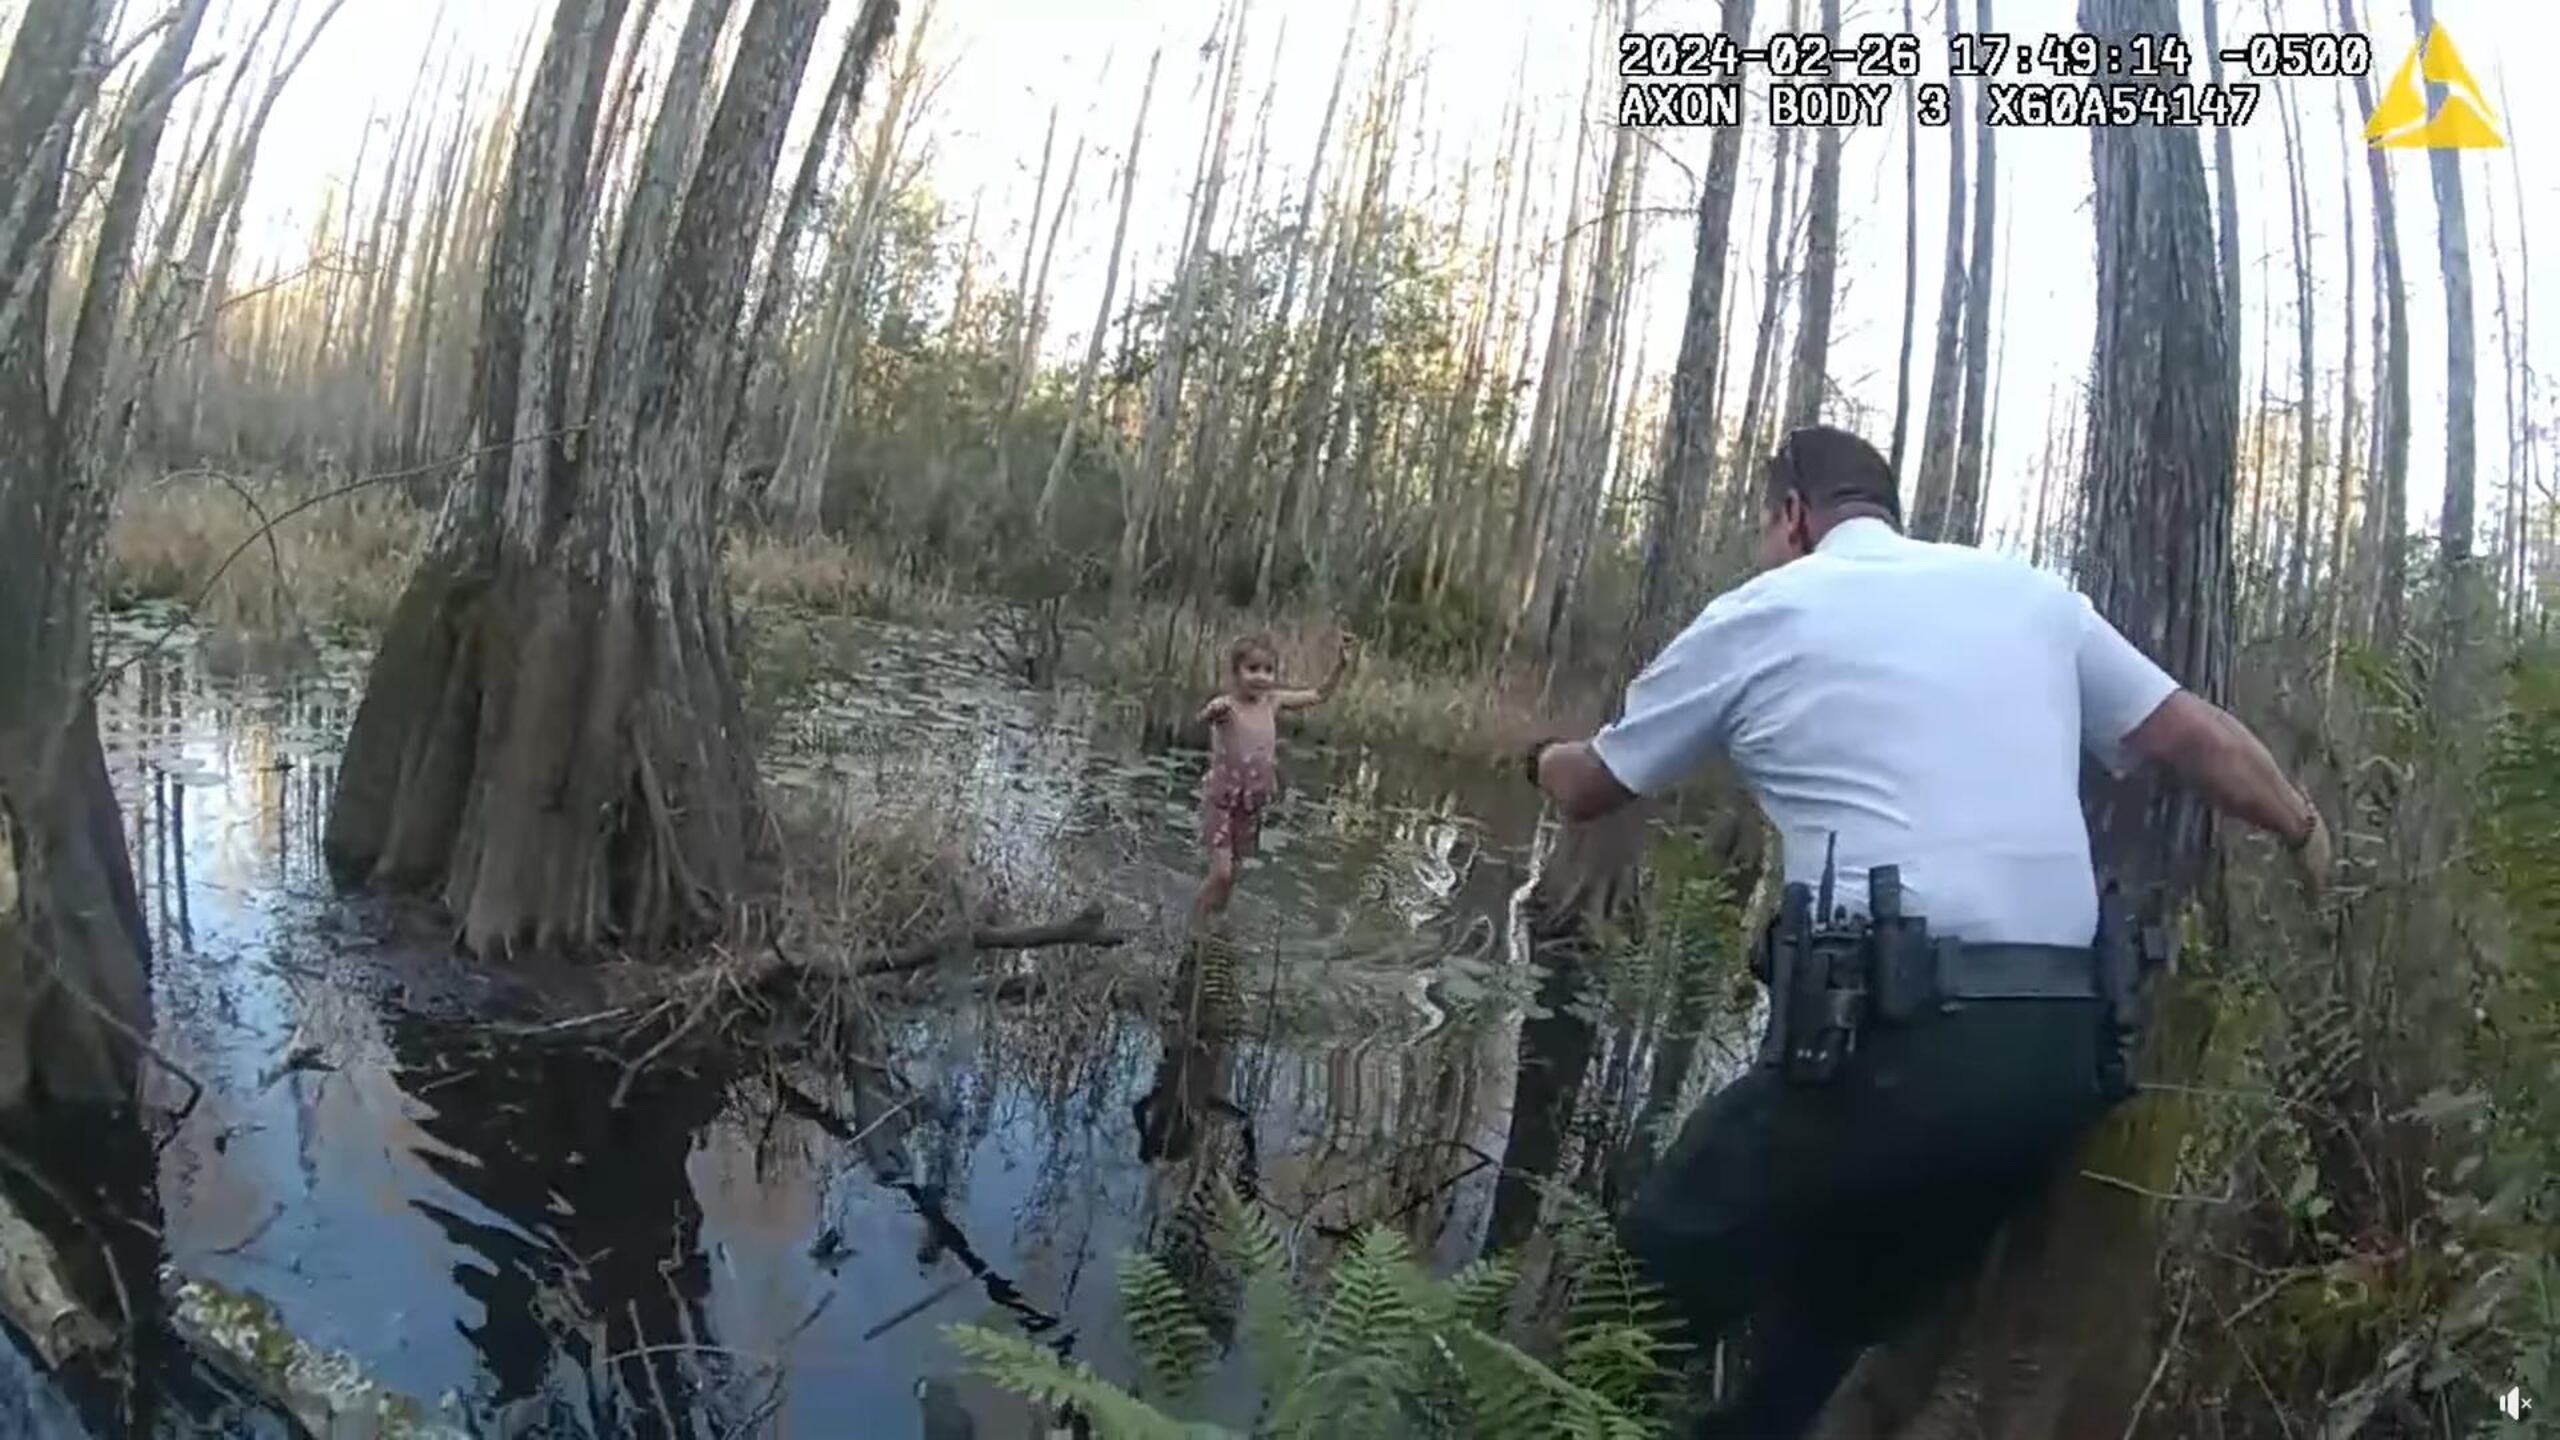 Captura de un vídeo divulgado por la Oficina del Alguacil del Condado Hillsborough donde se muestra a uno de sus agentes llamando a la niña al ser hallada con el agua hasta los tobillos en un pantano cerca de Tampa, Florida.